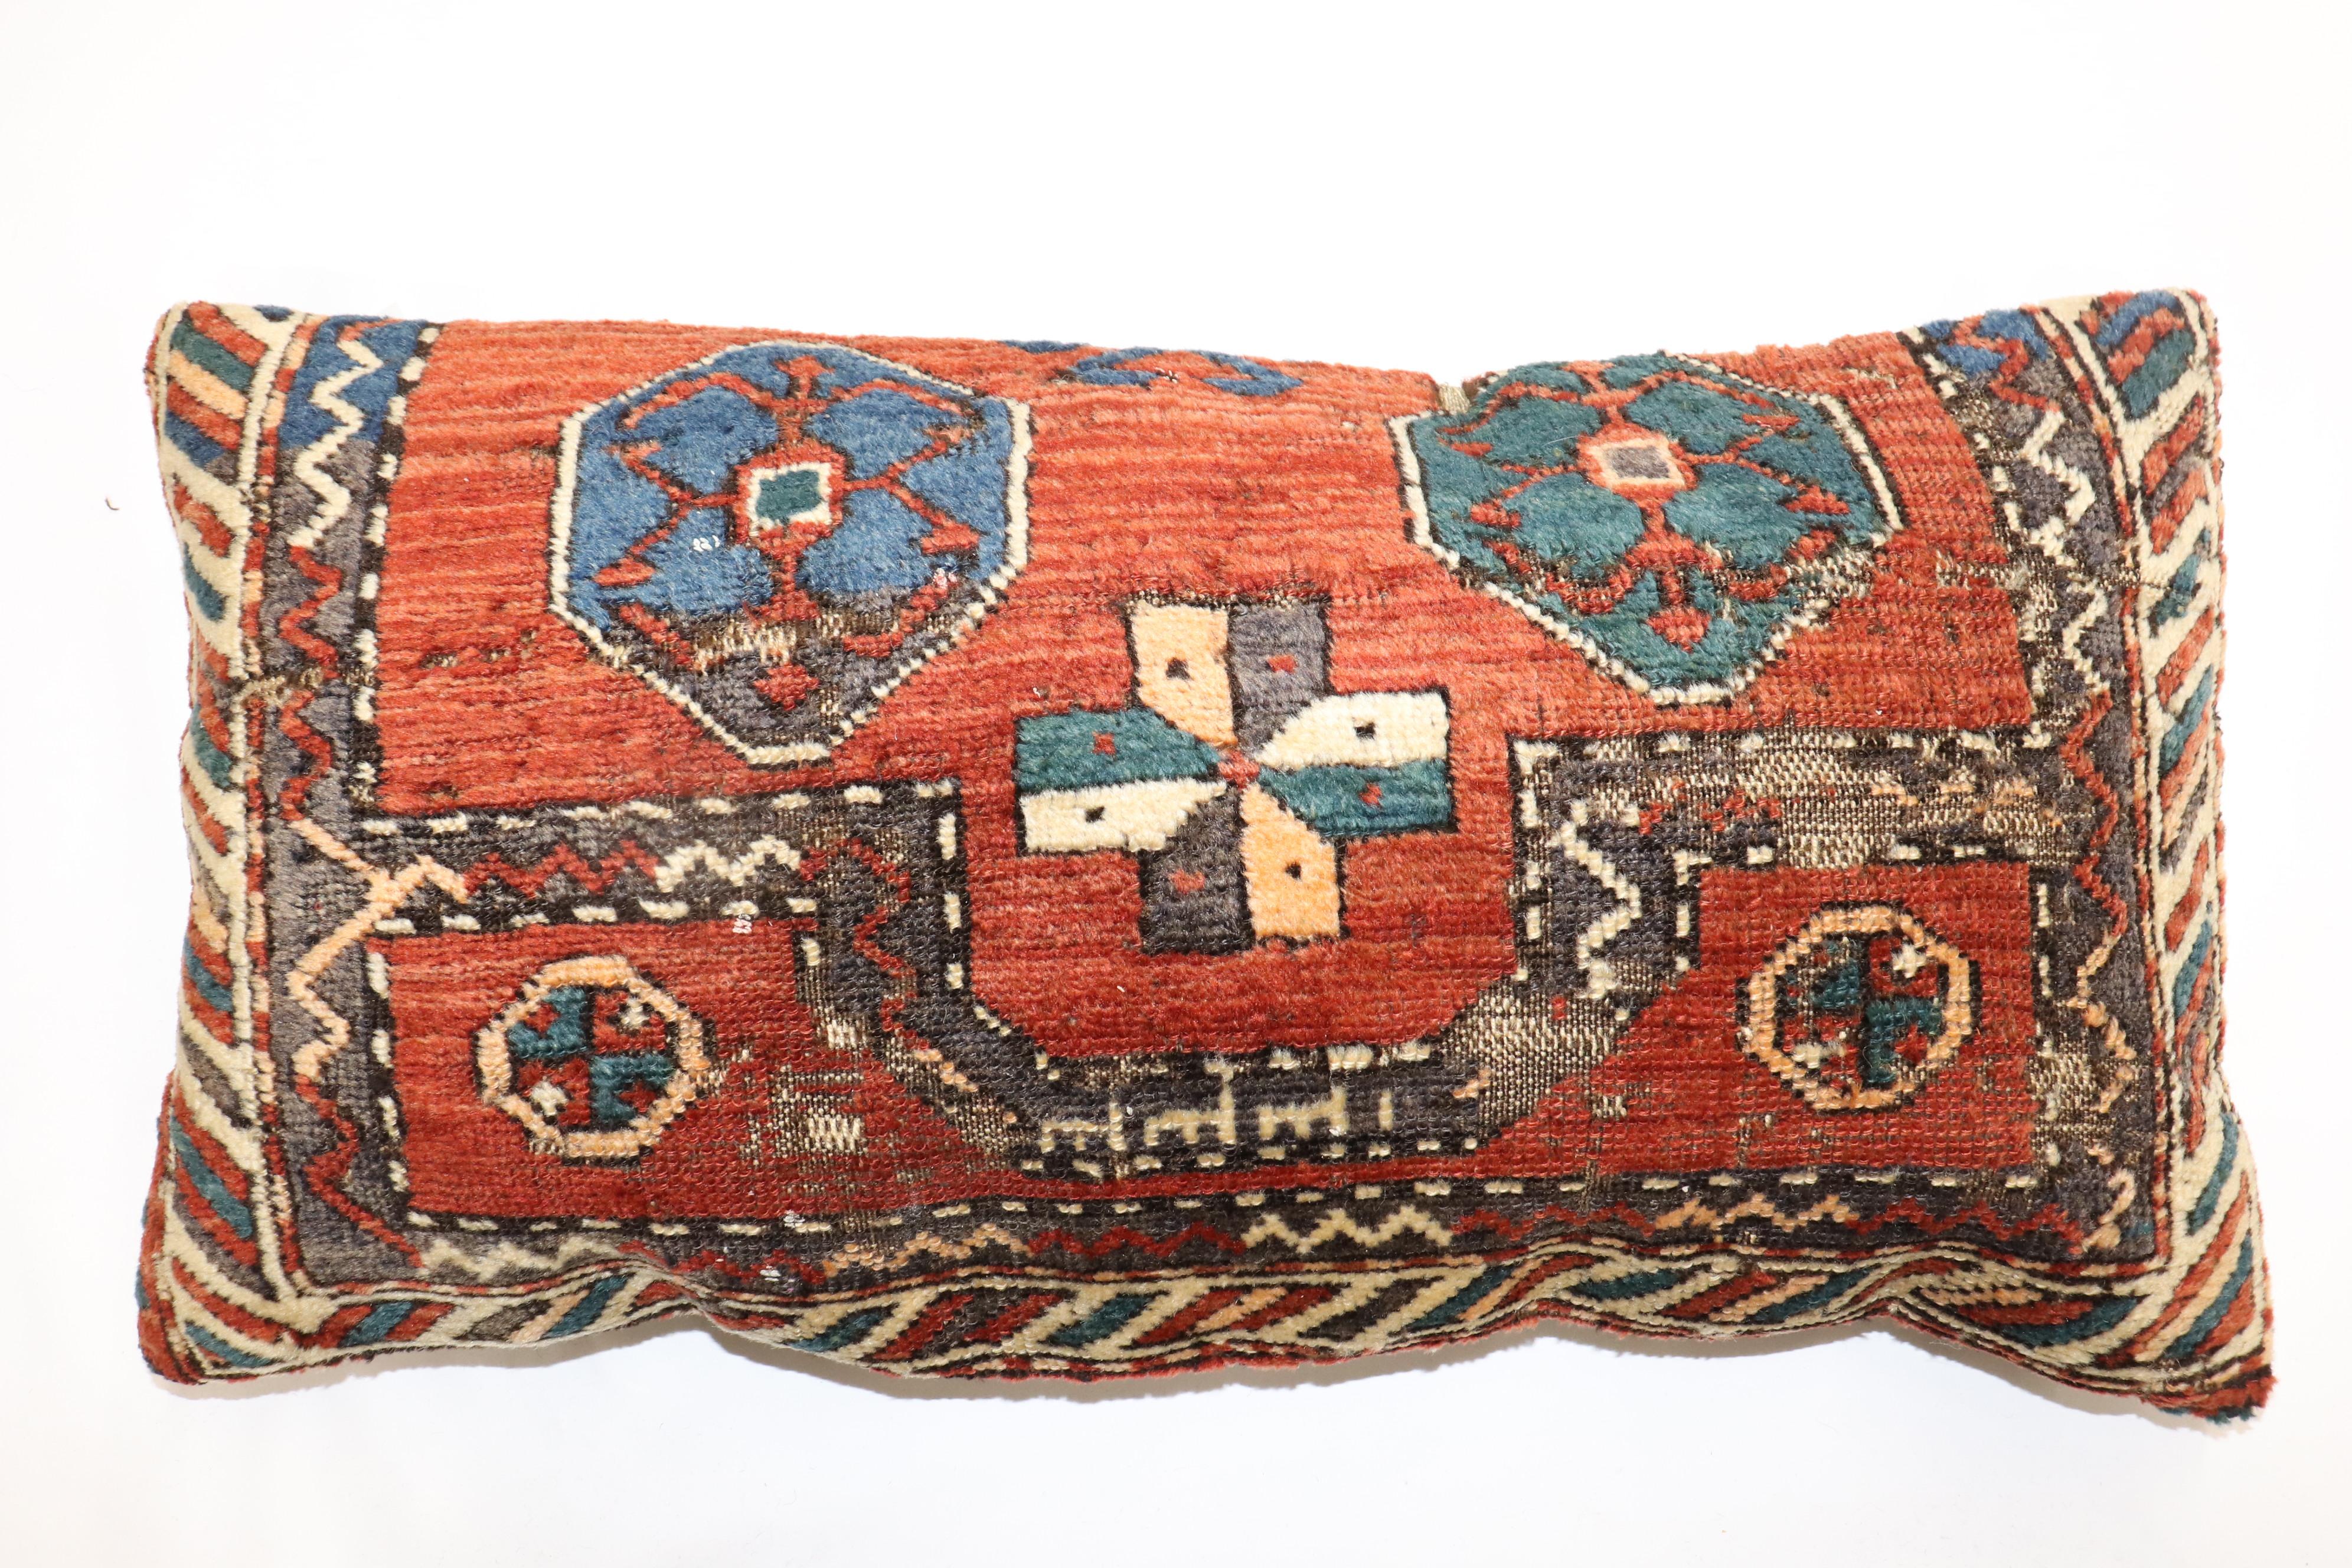 GrandOreiller fabriqué à partir d'un tapis persan kurde ancien du début du 20e siècle. Fermeture à glissière et poly-fill fourni.

Mesures : 16'' x 30''.